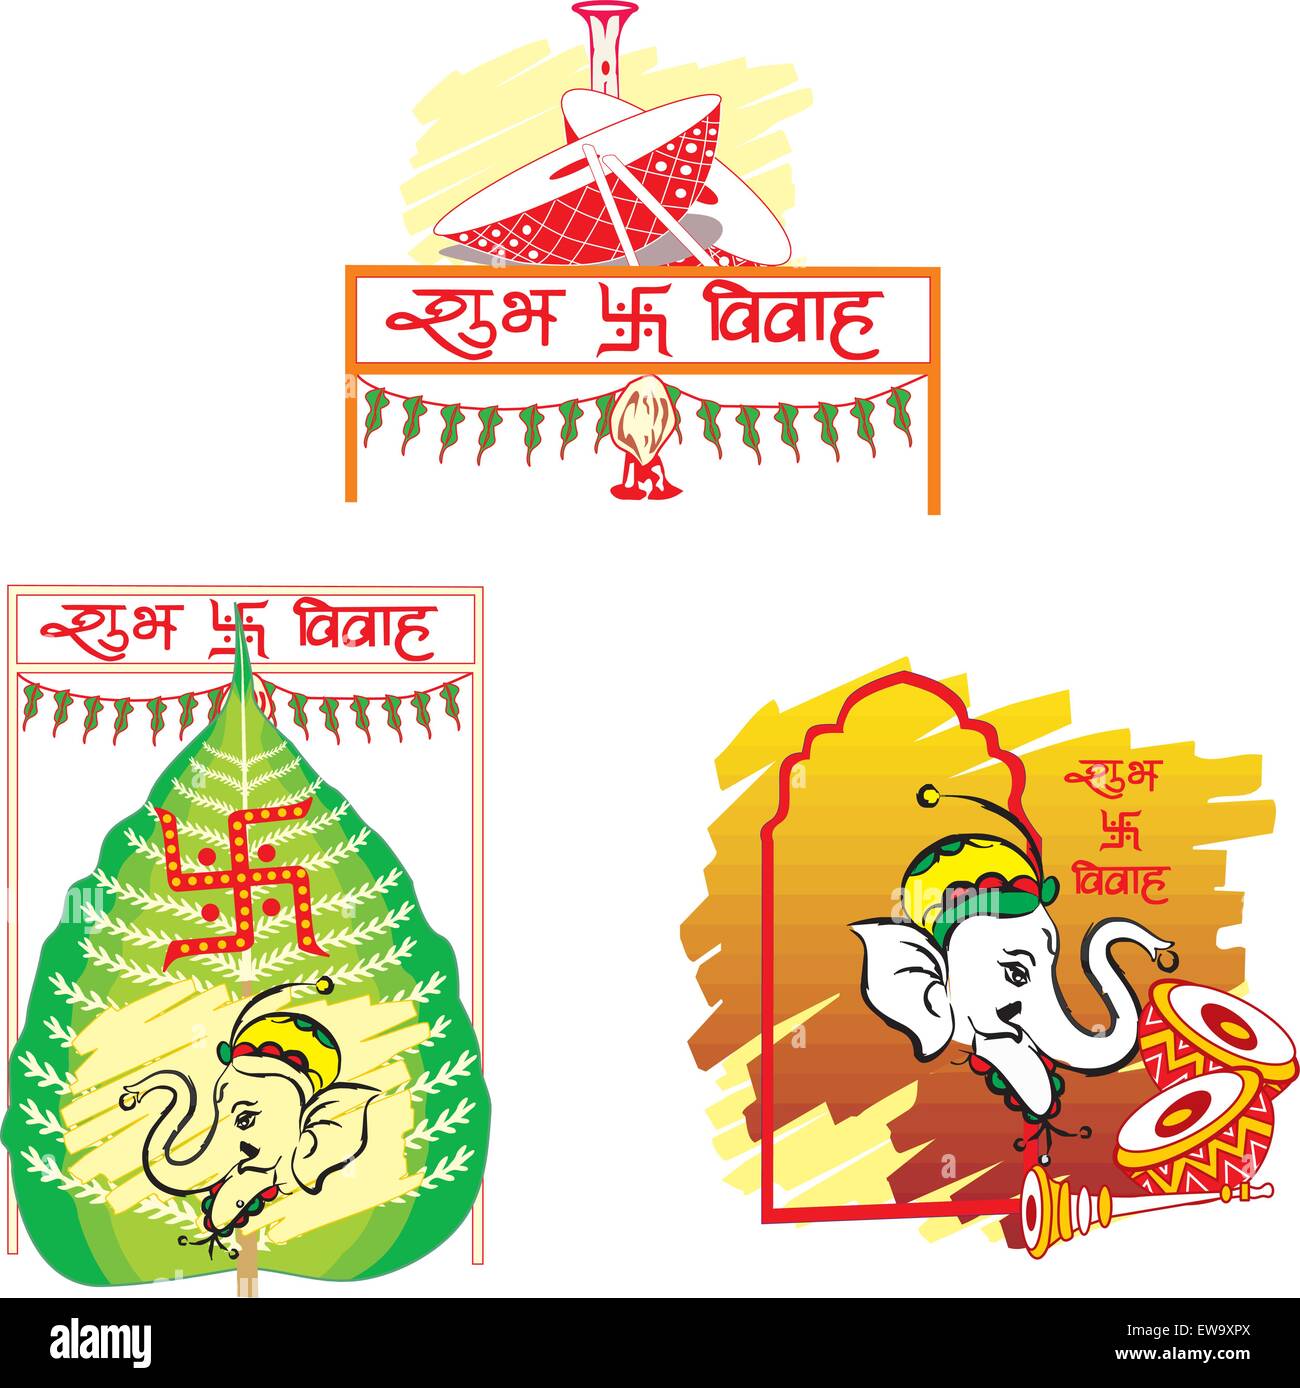 Shubh Vivah, indische Hochzeit, das Betelblatt symbolisiert Wohlstand, den Elefanten symbolisiert Weisheit, die Dhol Drums symbolisiert Festliche Musik, Vector Illustration Stock Vektor